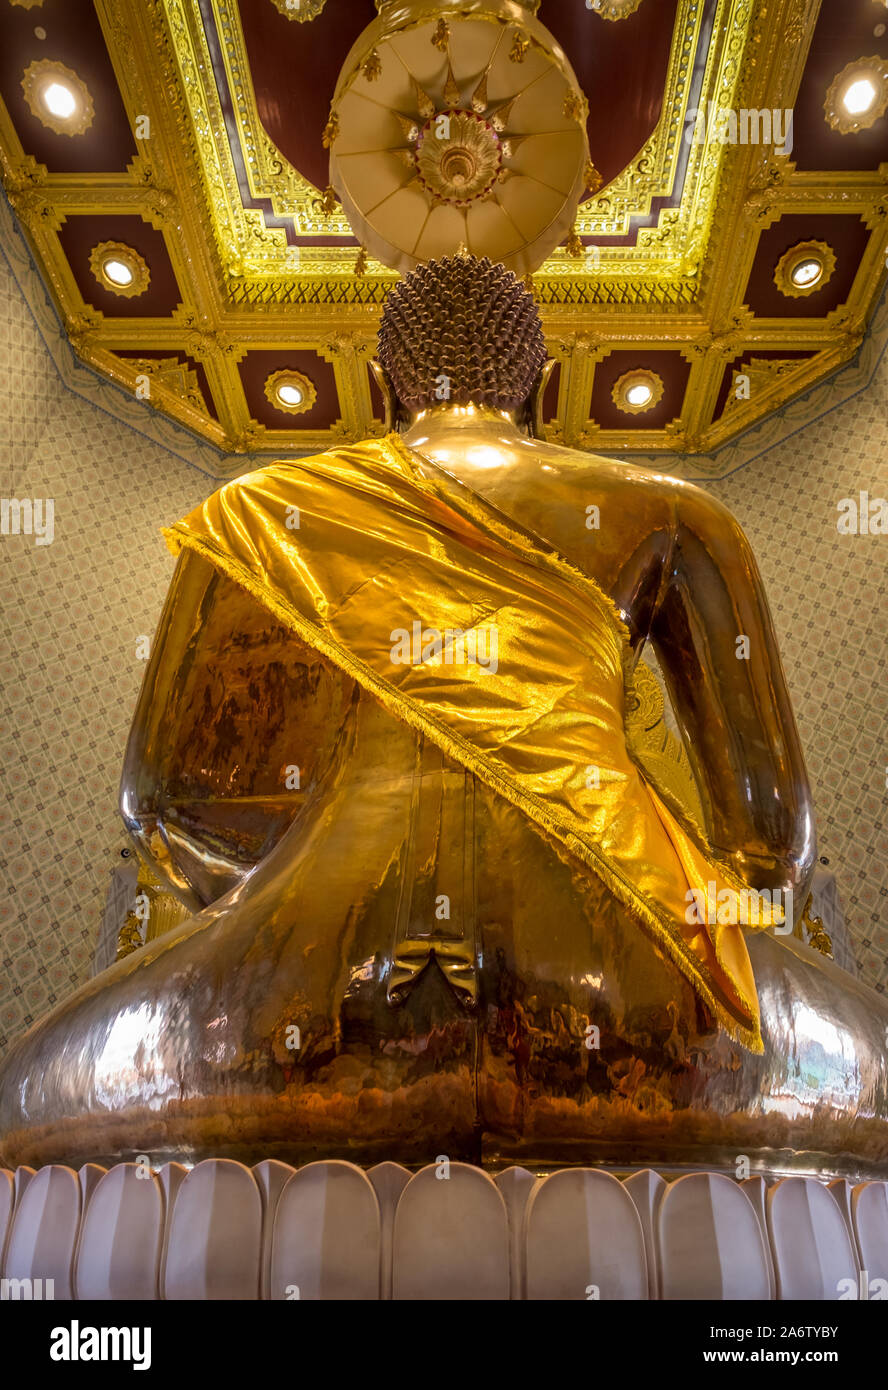 Den goldenen Buddha, Wat Traimit in Bangkok, Thailand. Dies ist die grösste reine goldenen Buddha-Statue der Welt. Stockfoto